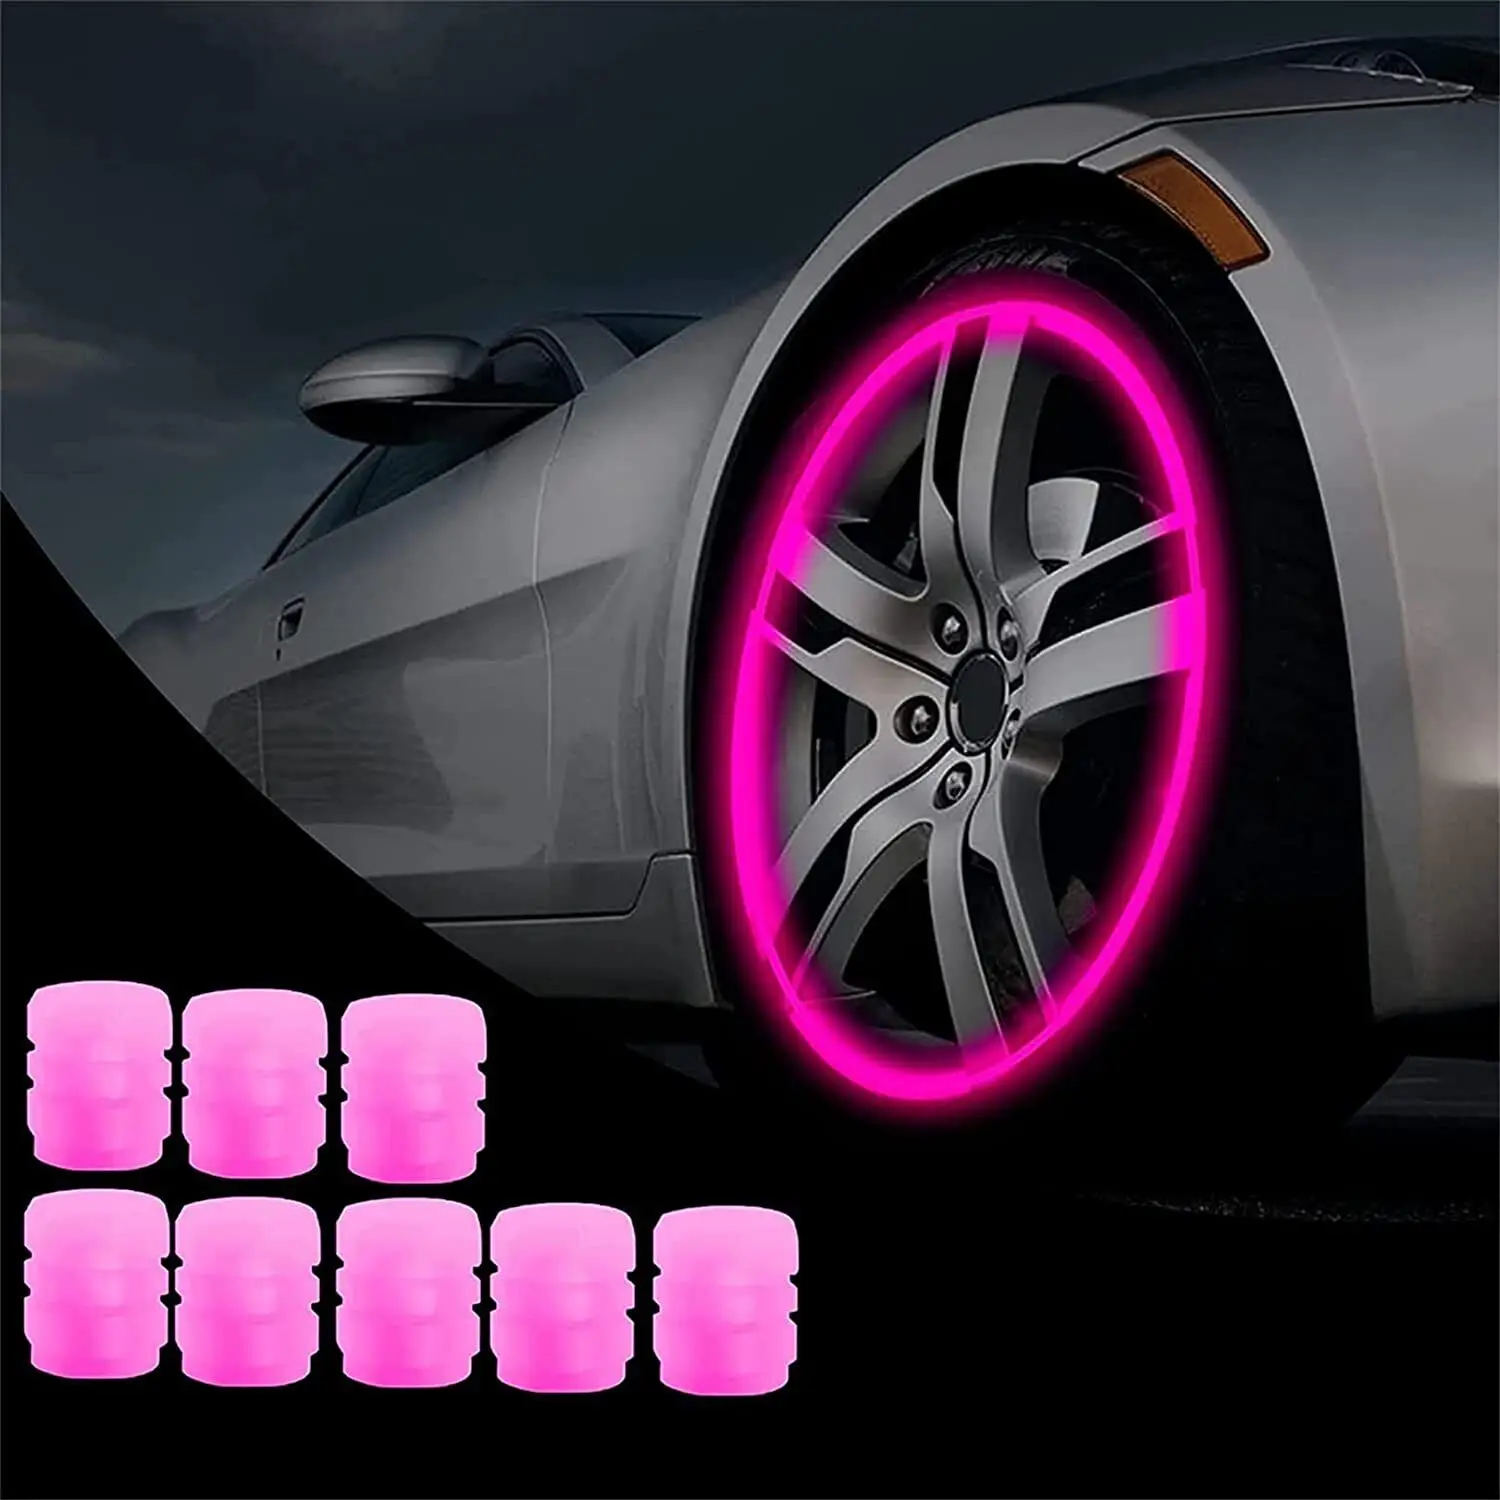 

8PCS Car Auto Wheel Tire Tyre Air Valve Stem LED Light Caps Cover Accessories